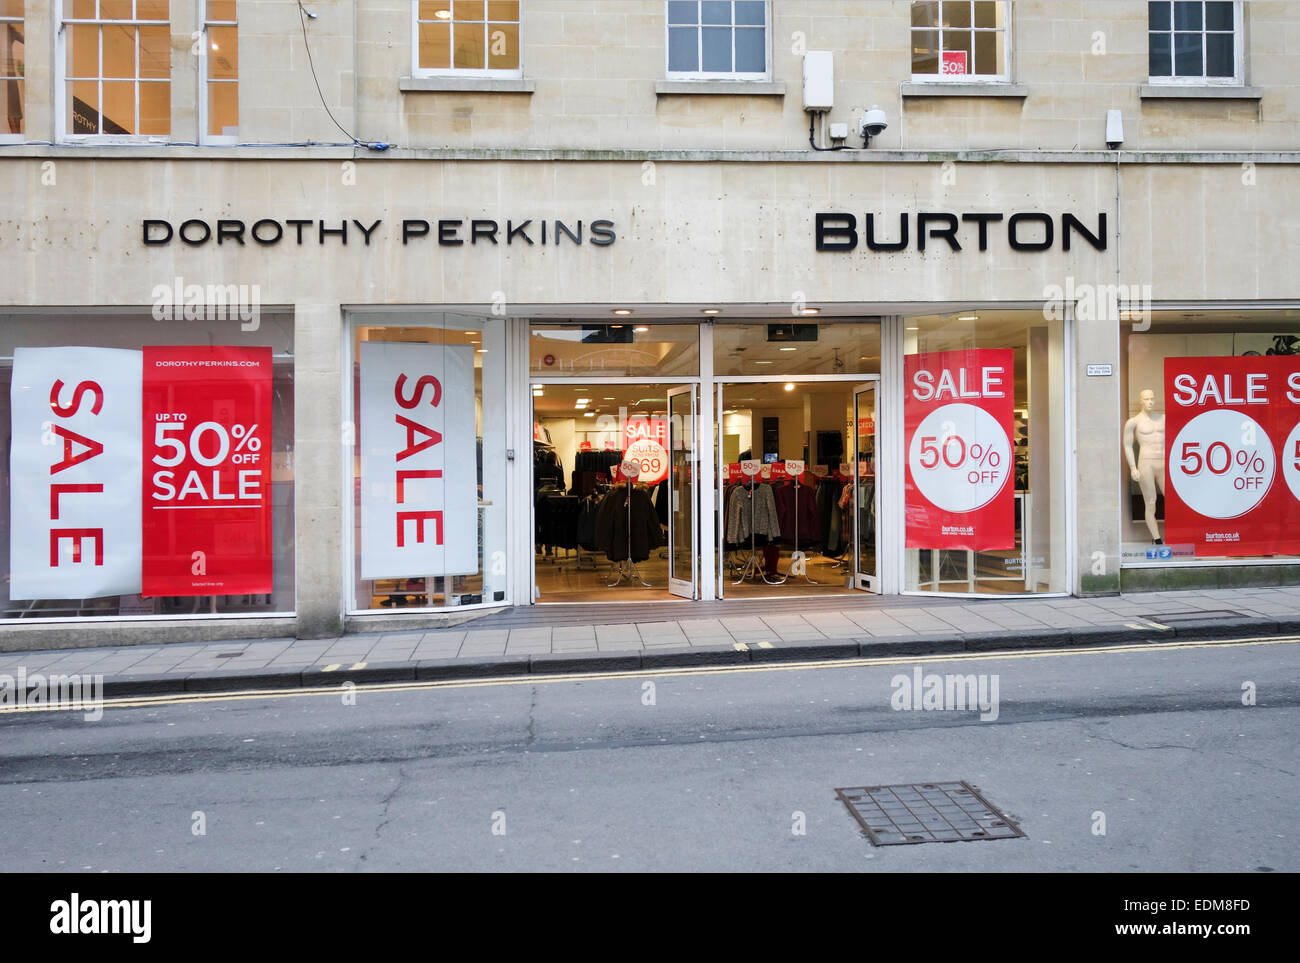 50% di sconto sui cartelli di vendita a Dorothy Perkins - vetrine Burtons, City Bath, Inghilterra, Regno Unito Foto Stock